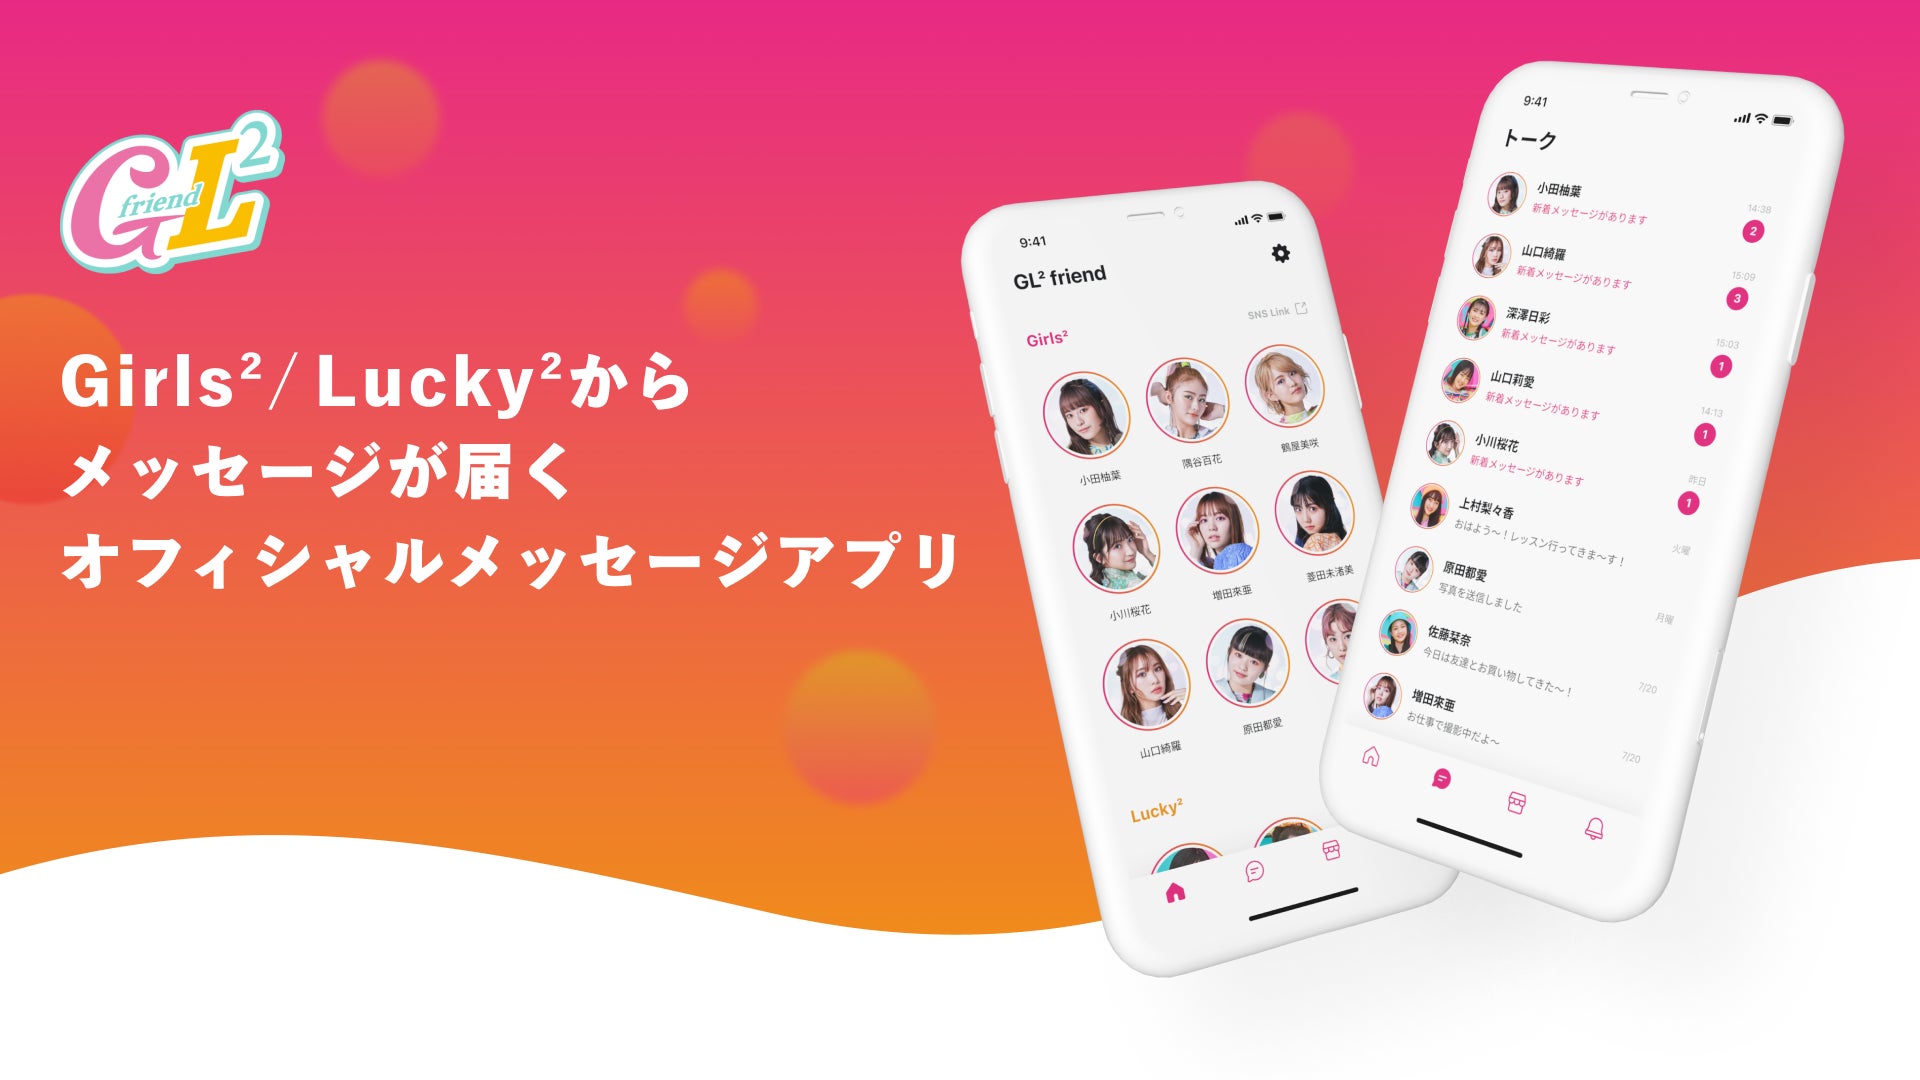 Girls²とLucky²のメンバーからメッセージが届くオフィシャルメッセージアプリ「GL² friend」が開始！のサブ画像1